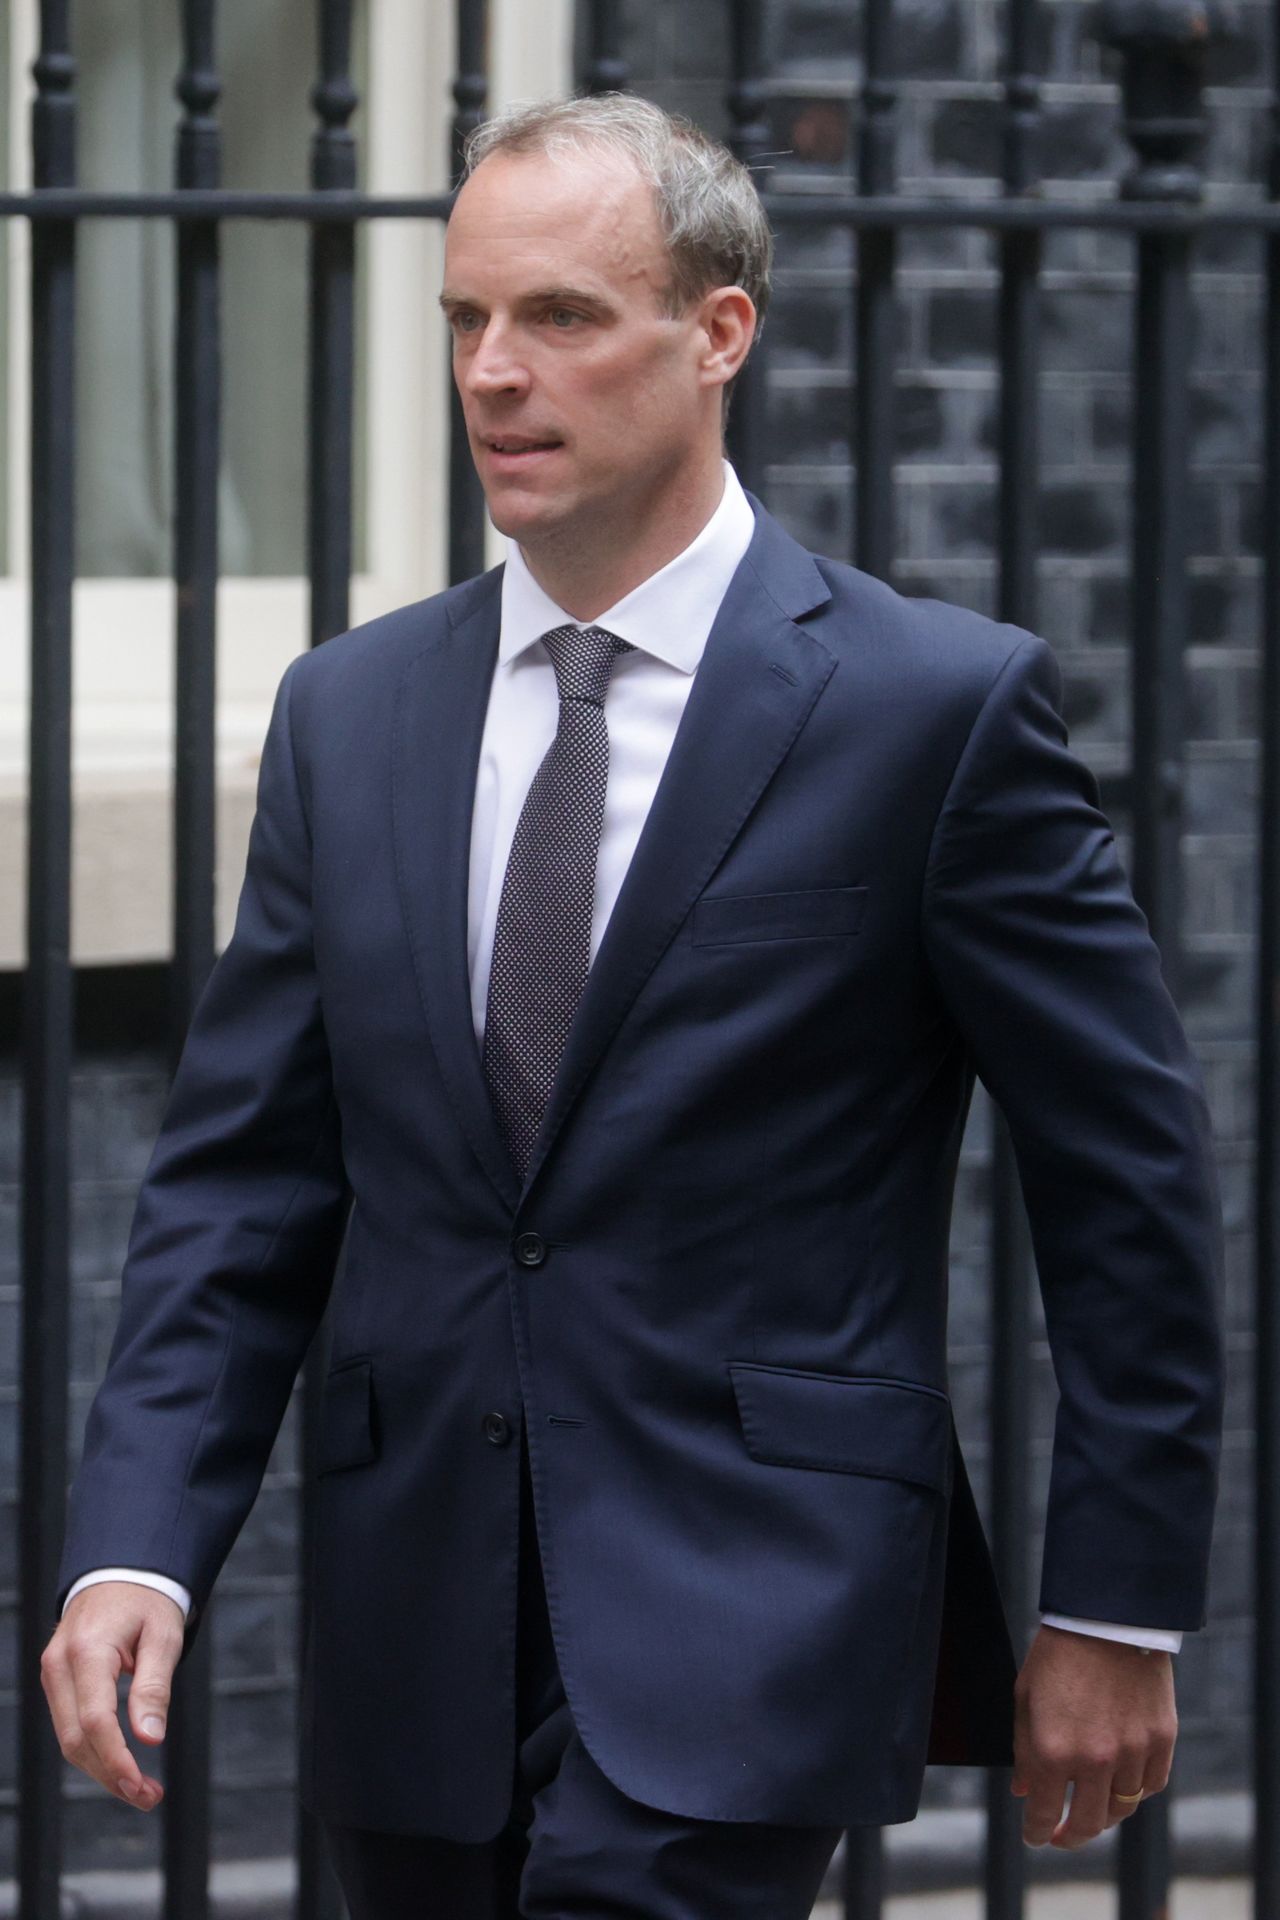 وزير الخارجية البريطاني دومينيك راب خارج مقر الحكومة في لندن يوم 19 أغسطس اب 2021. تصوير: هانا مكاي - رويترز.